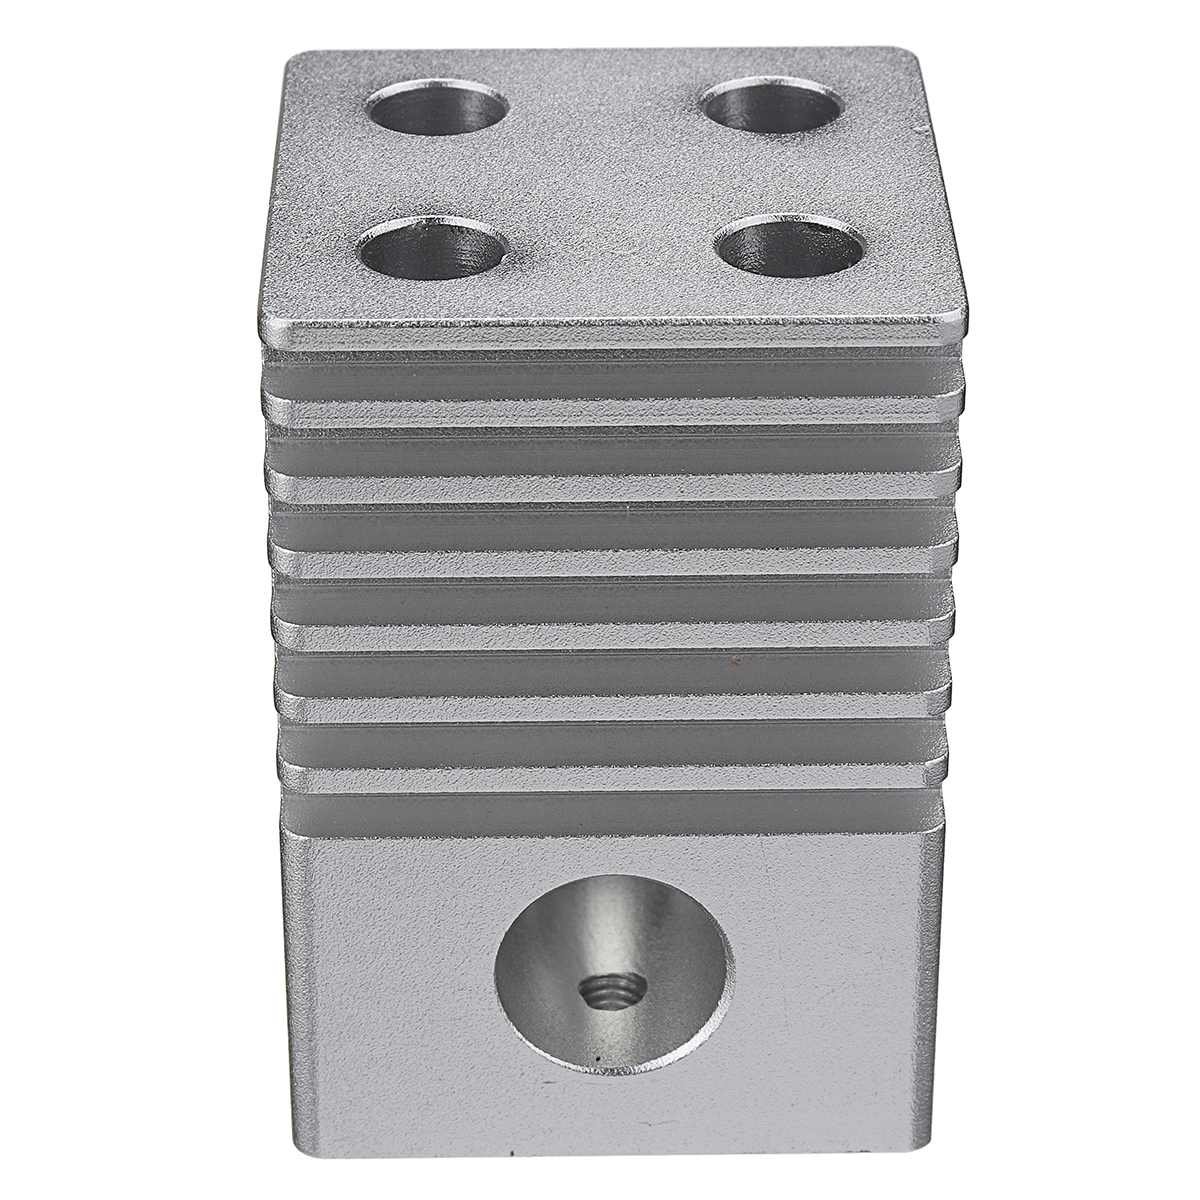 353550mm-Ultimaker2-Aluminum-Alloy-Cross-Slide-4-Nozzles-for-3D-Printer-1284045-4